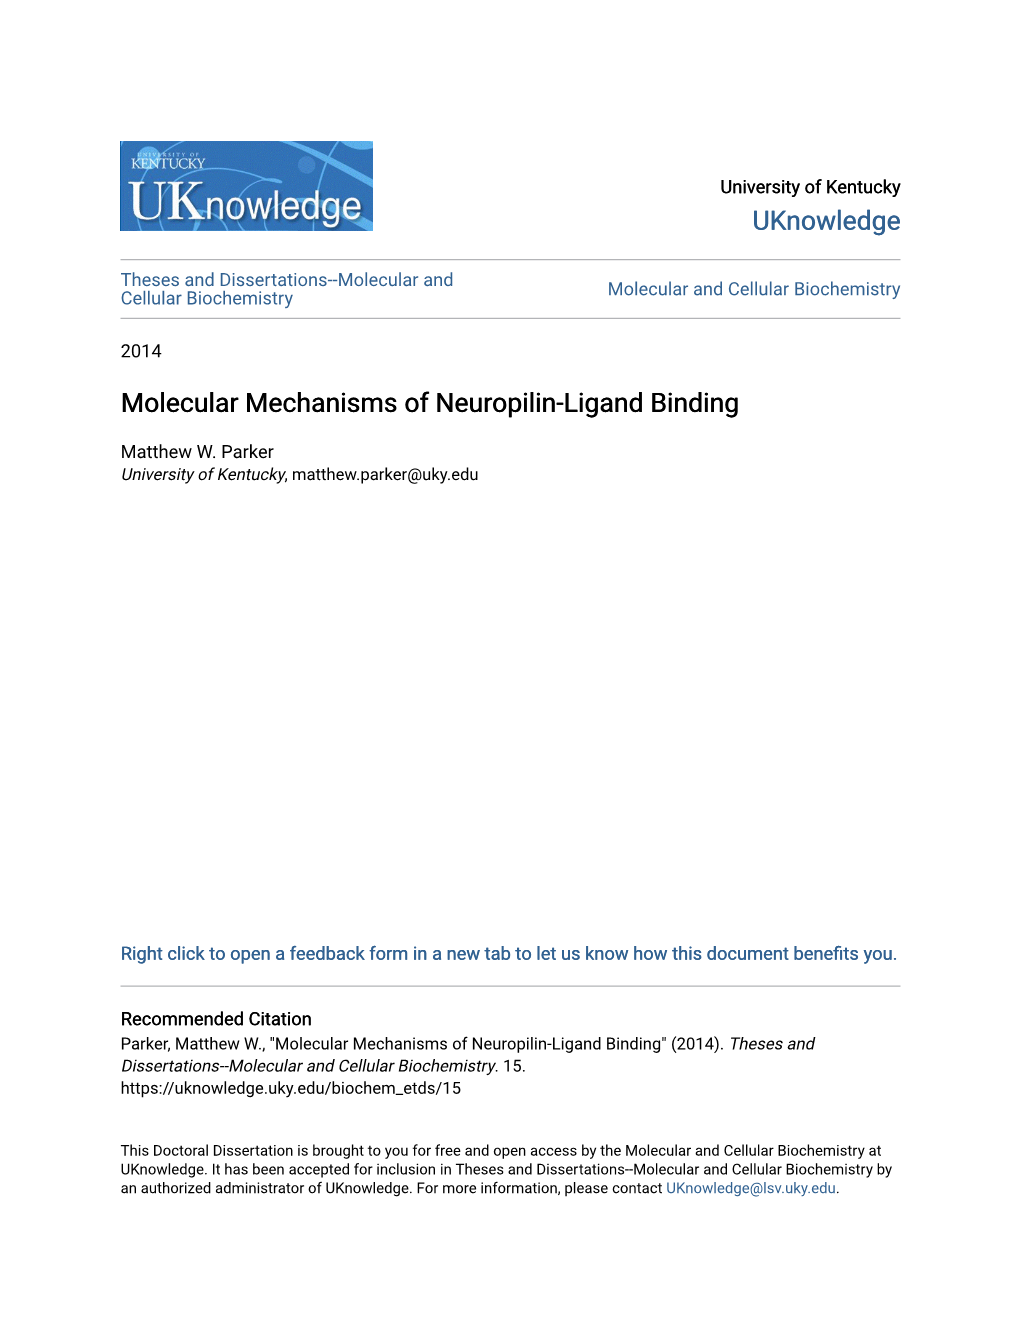 Molecular Mechanisms of Neuropilin-Ligand Binding